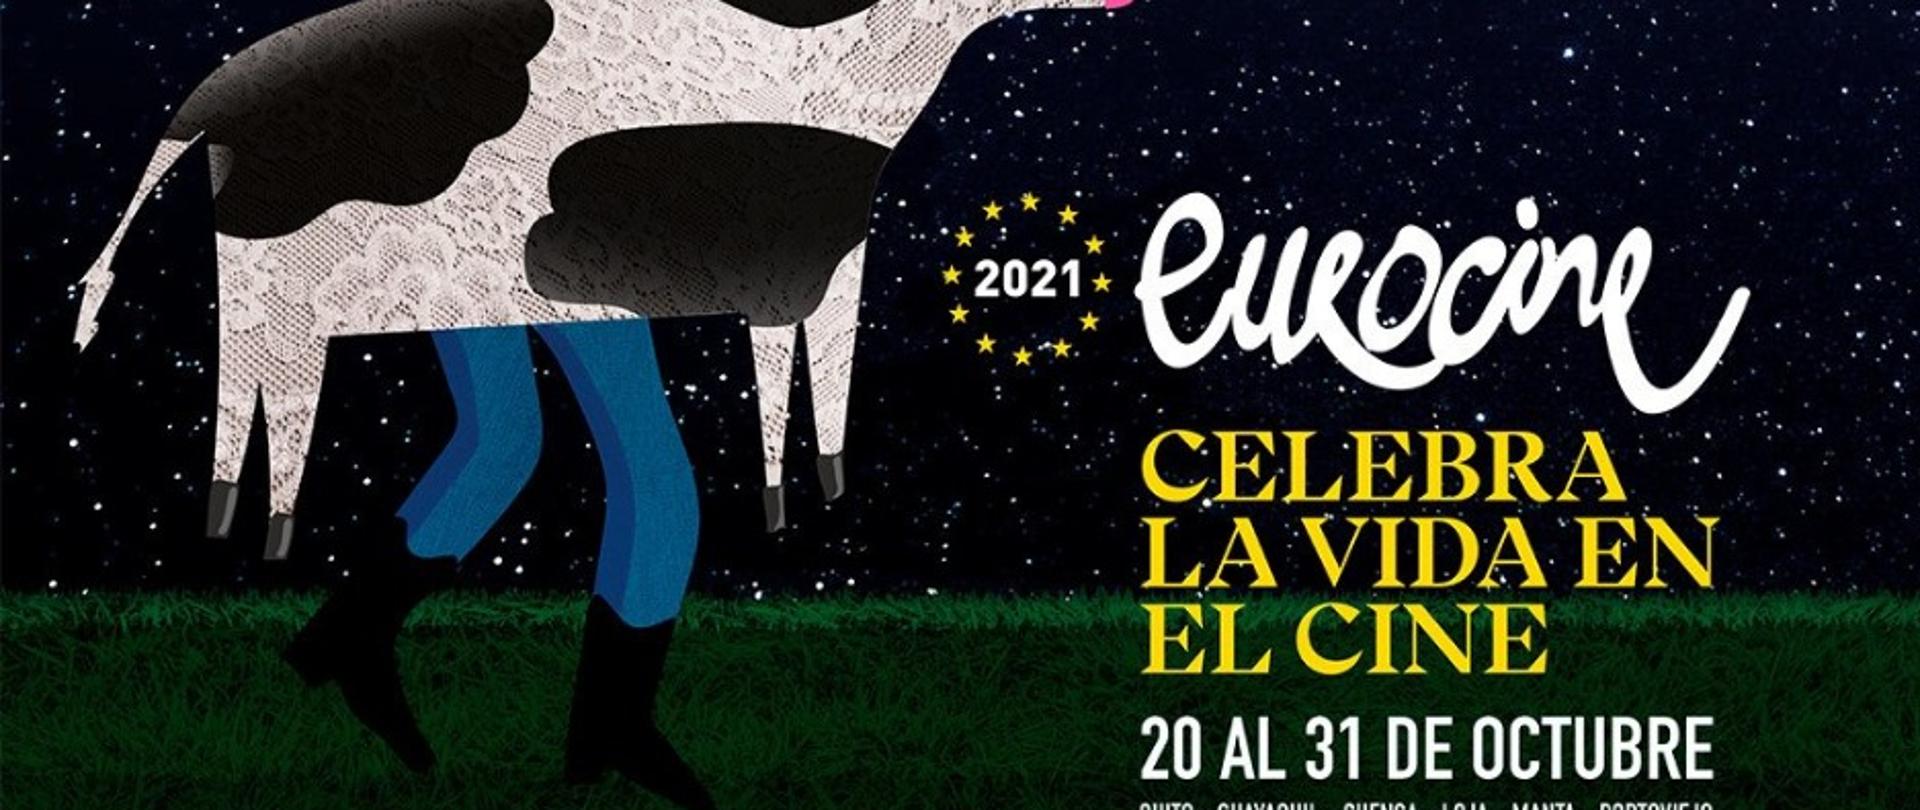 eurocine_ecuador